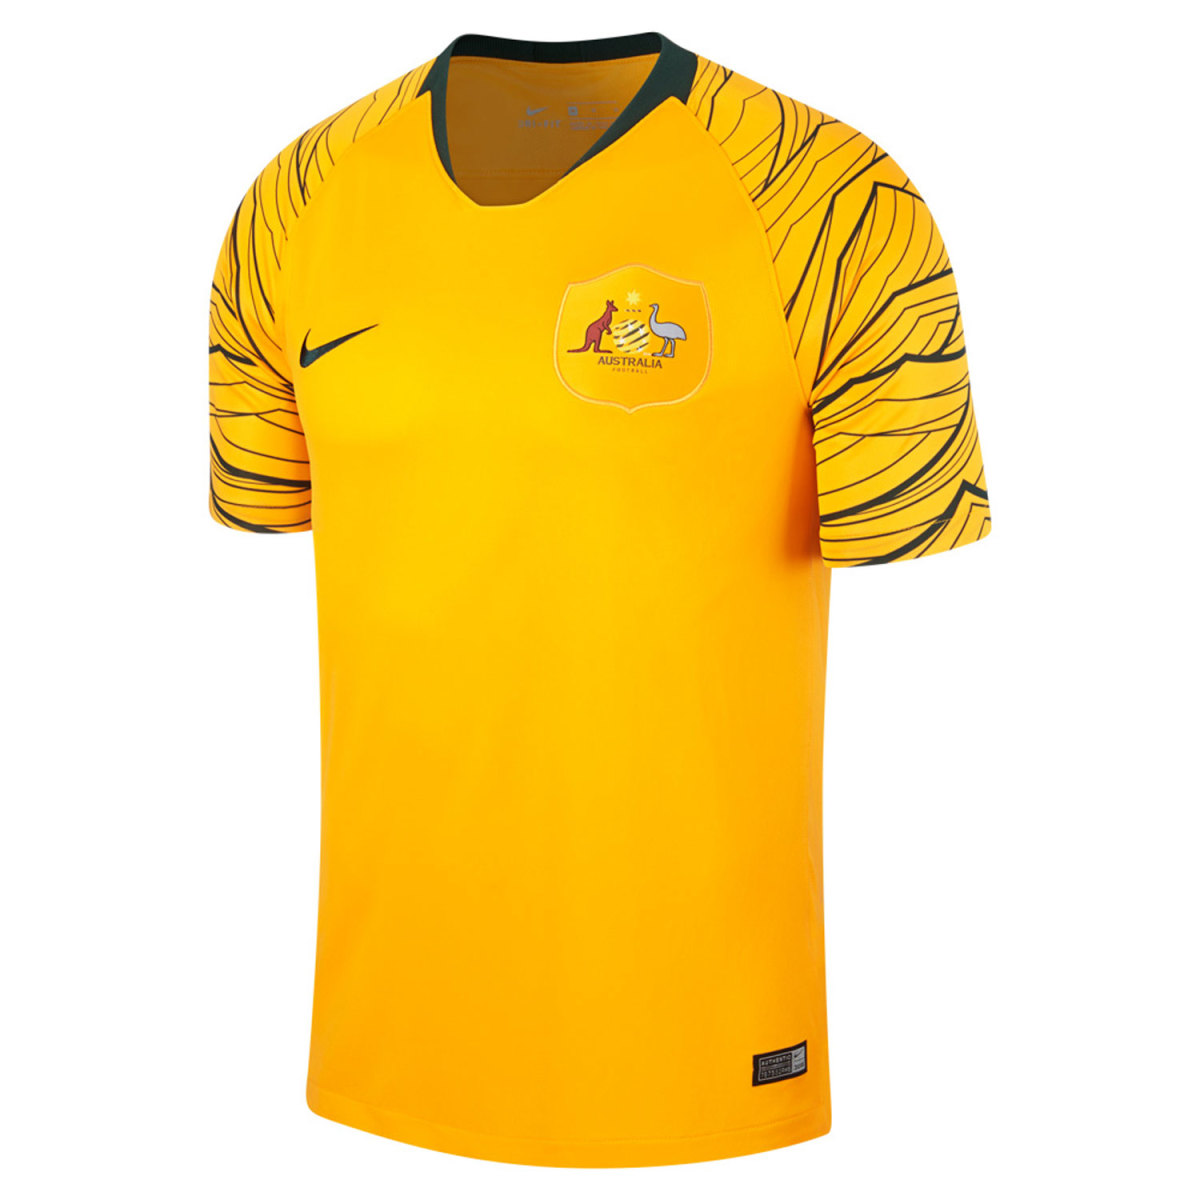 Socceroos World Cup uniforms